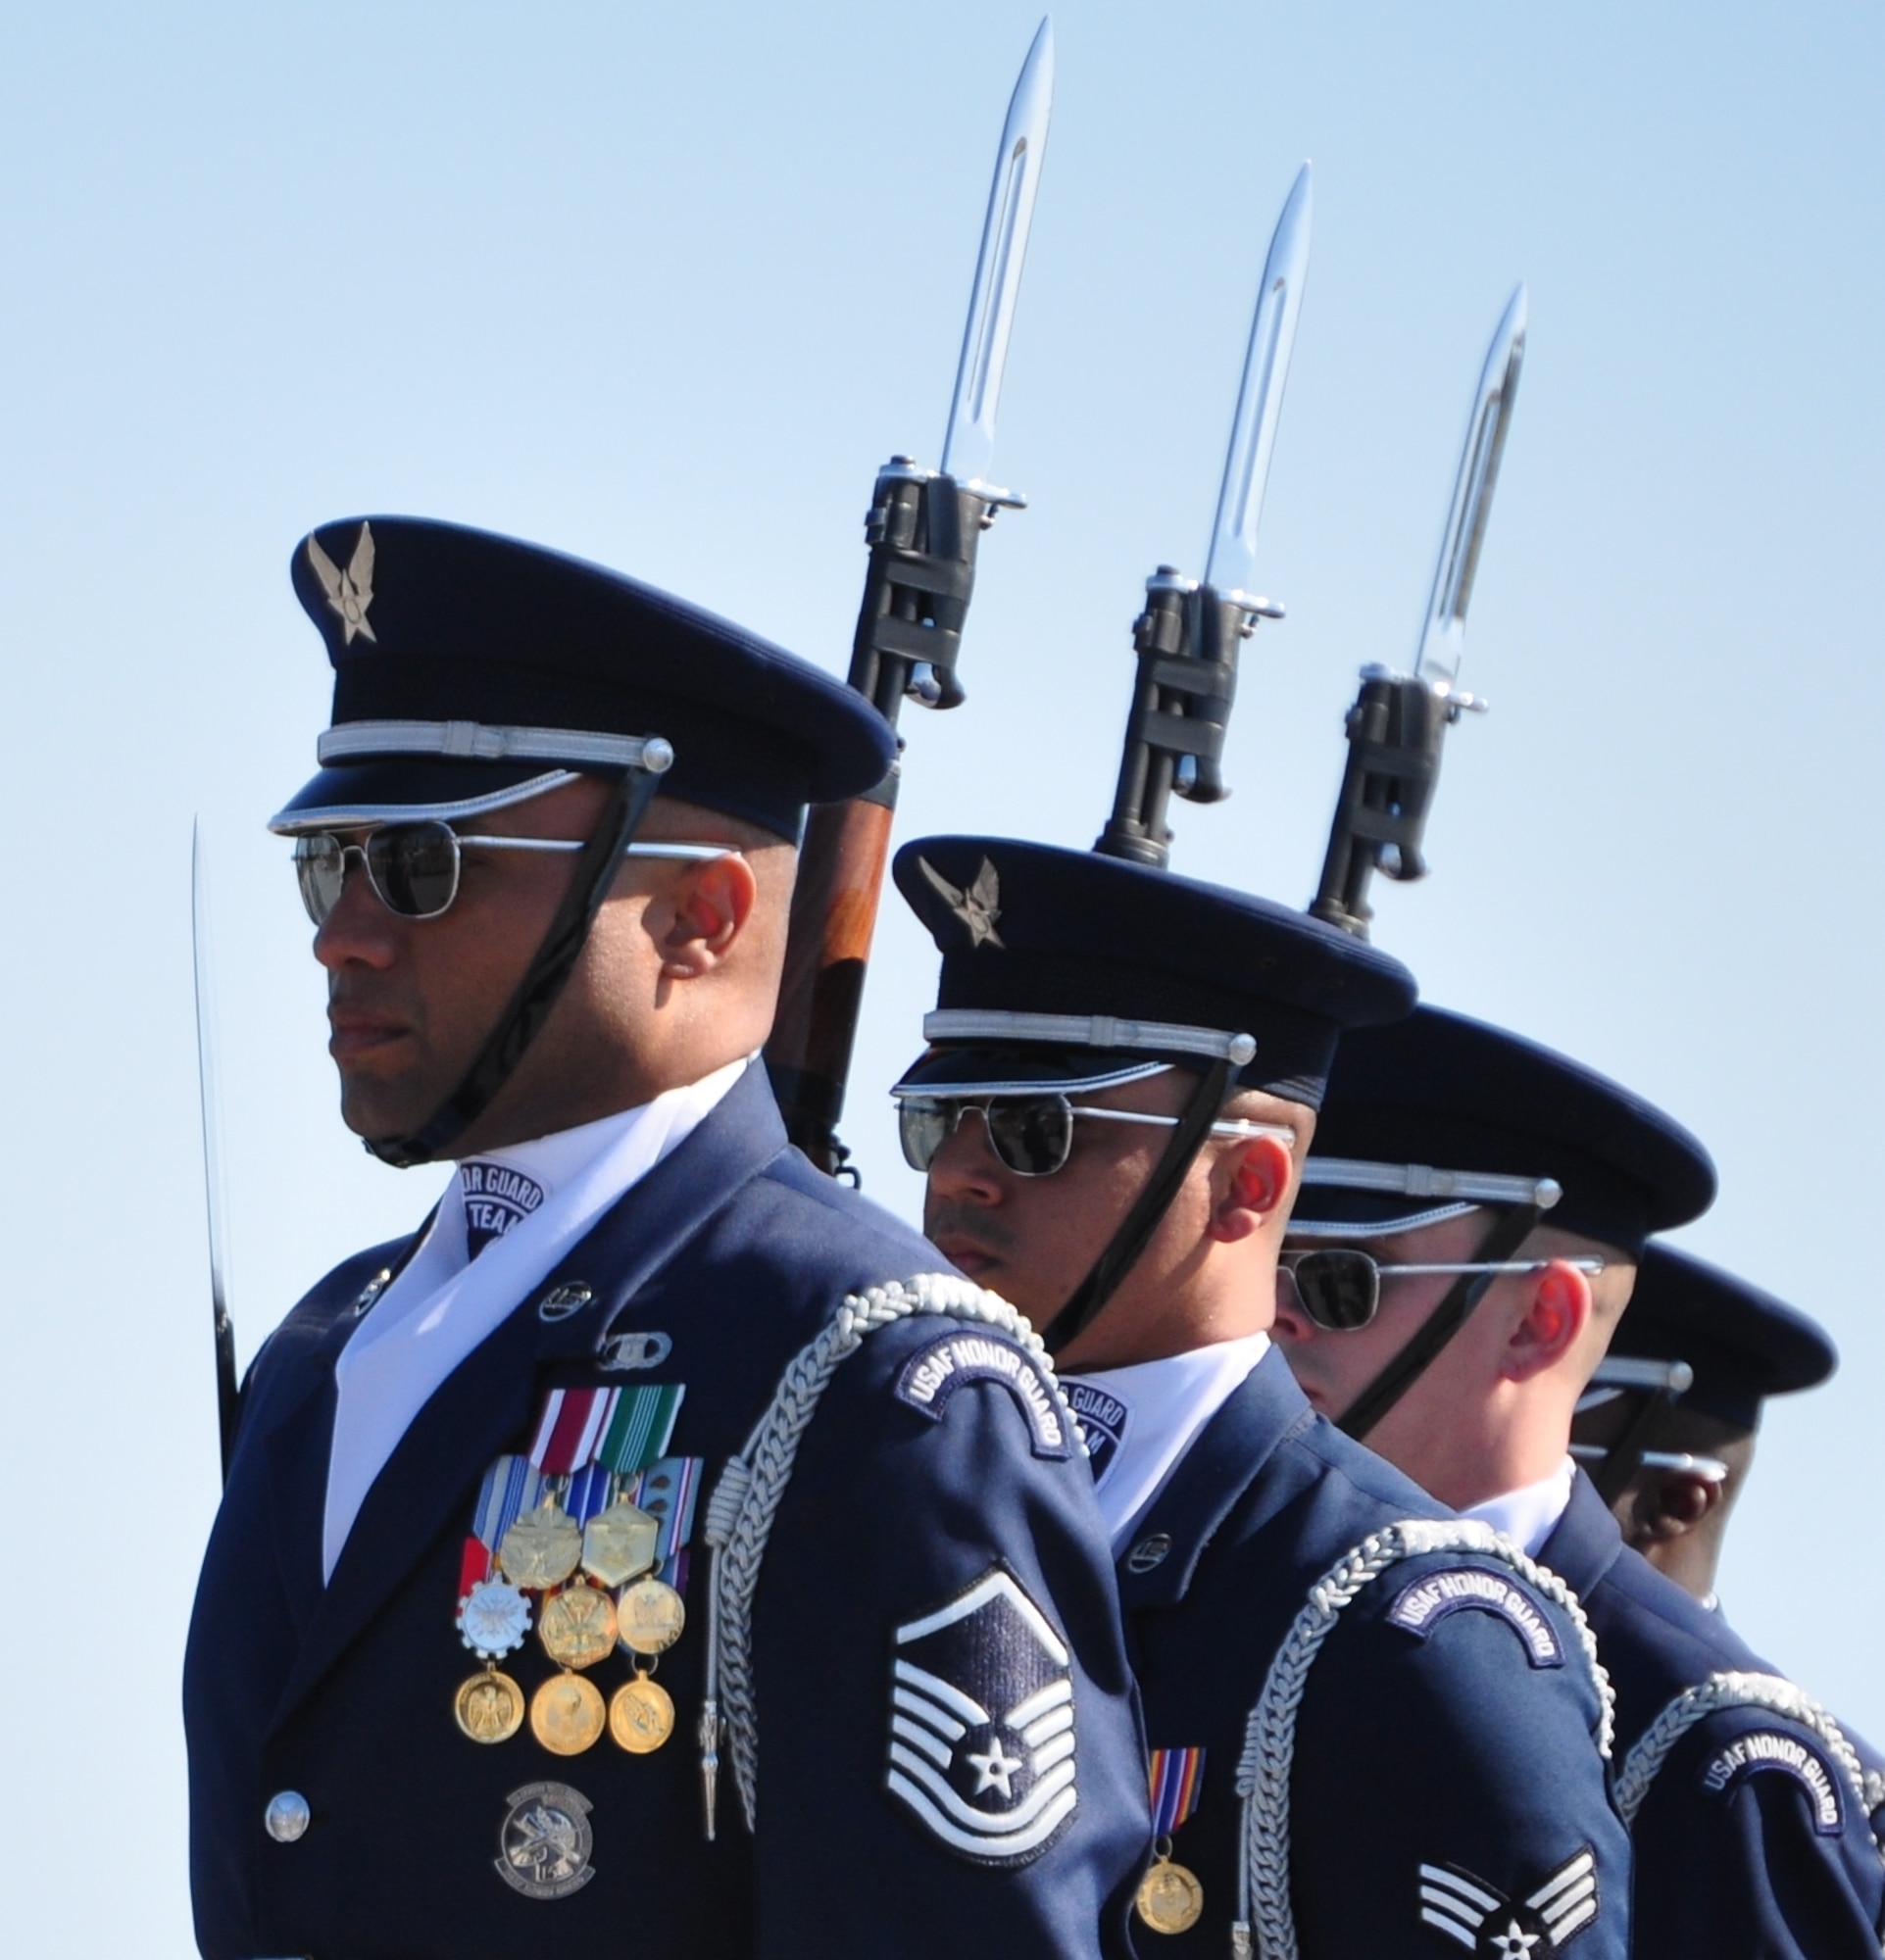 Official U.S. Air Force Honor Guard emblem